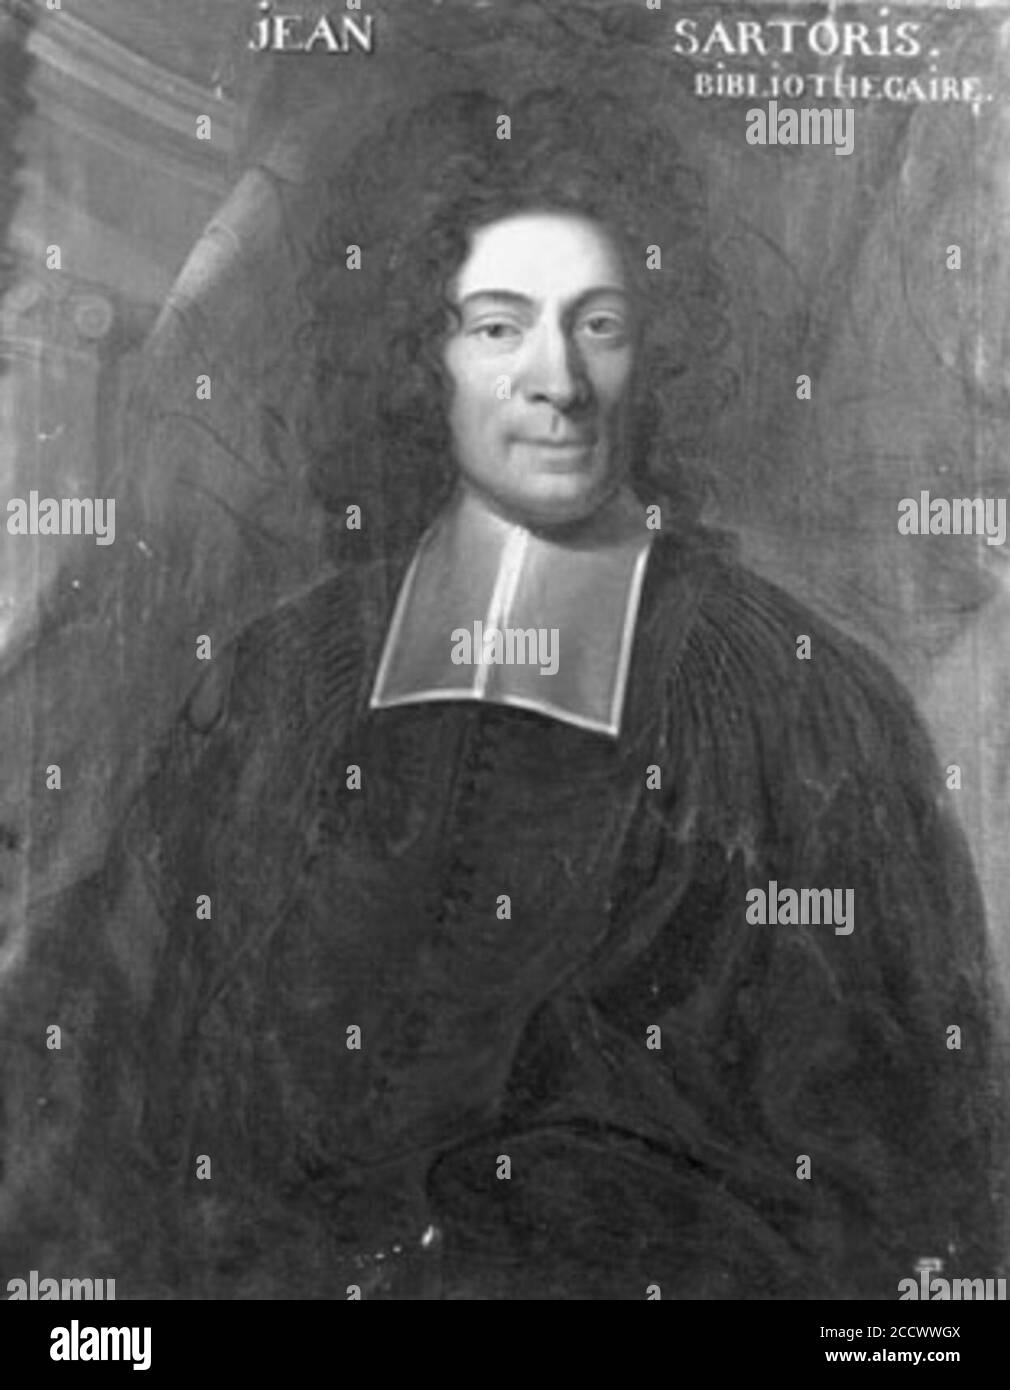 Jean Sartoris (1656-1721), théologien genevois, bibliothécaire. Banque D'Images